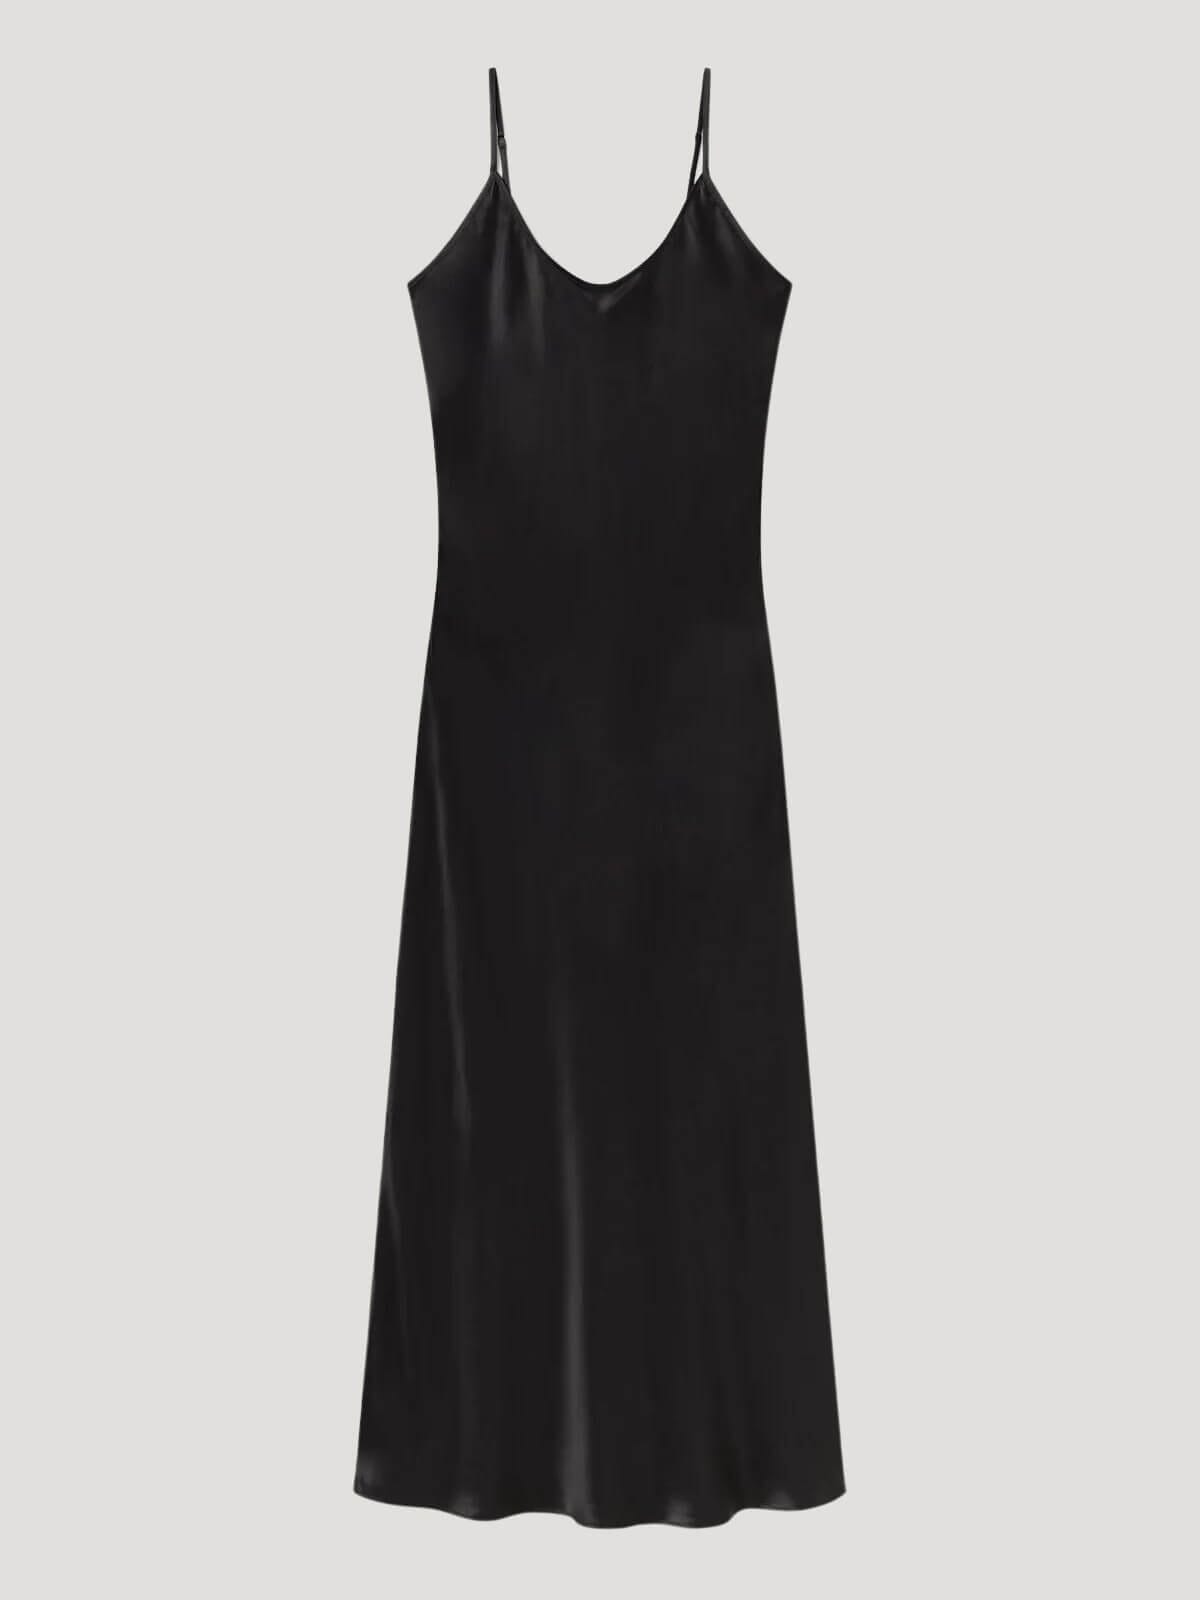 Silk Laundry | 1996 Dress - Black | Perlu